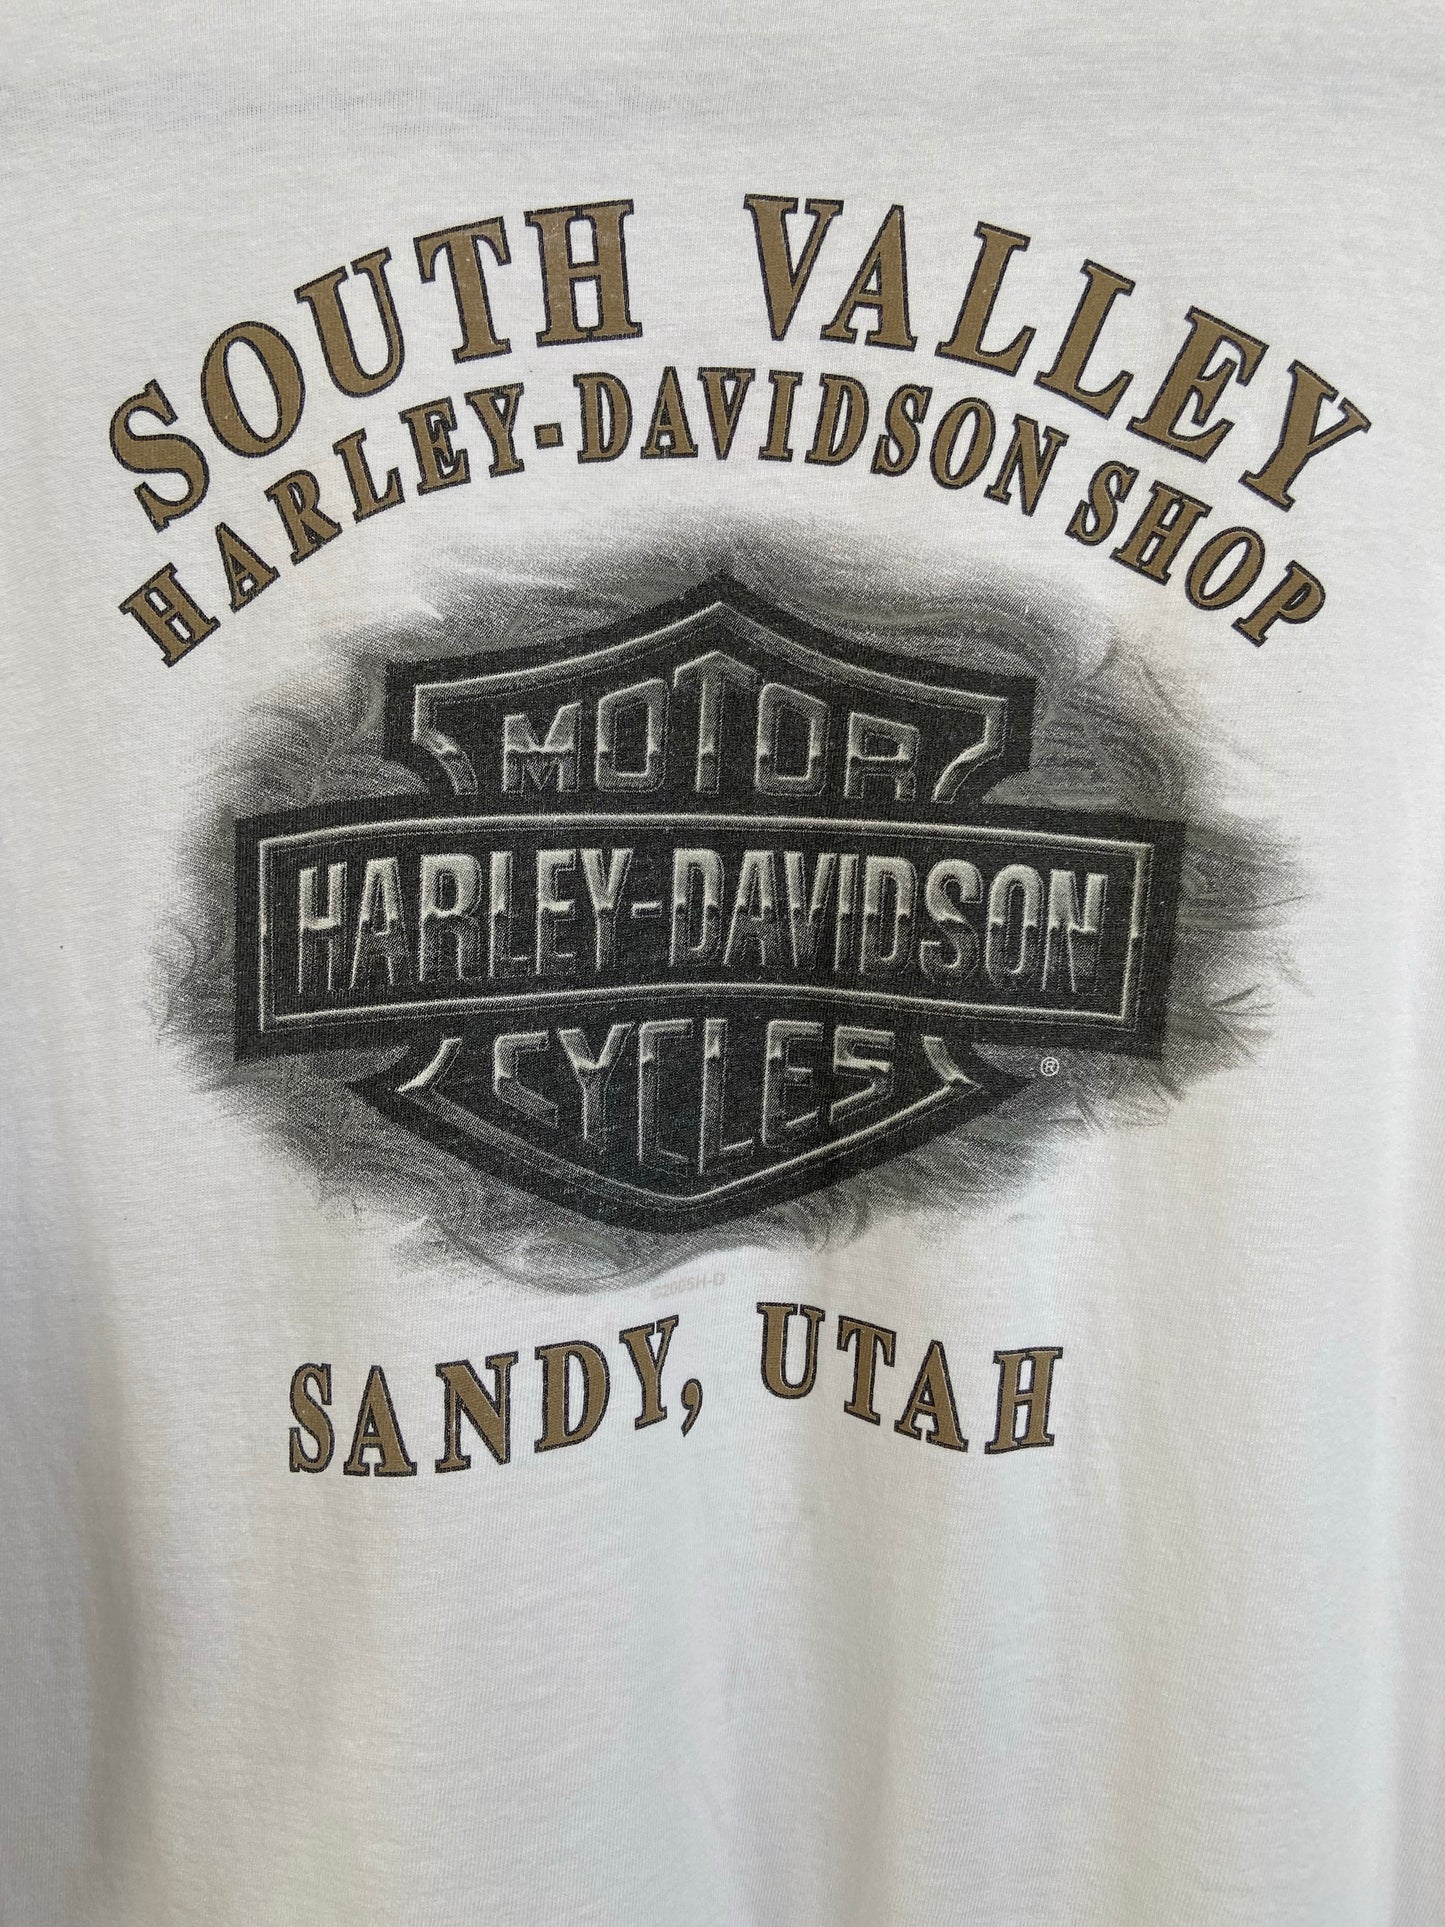 White Harley Davidson Utah Tee